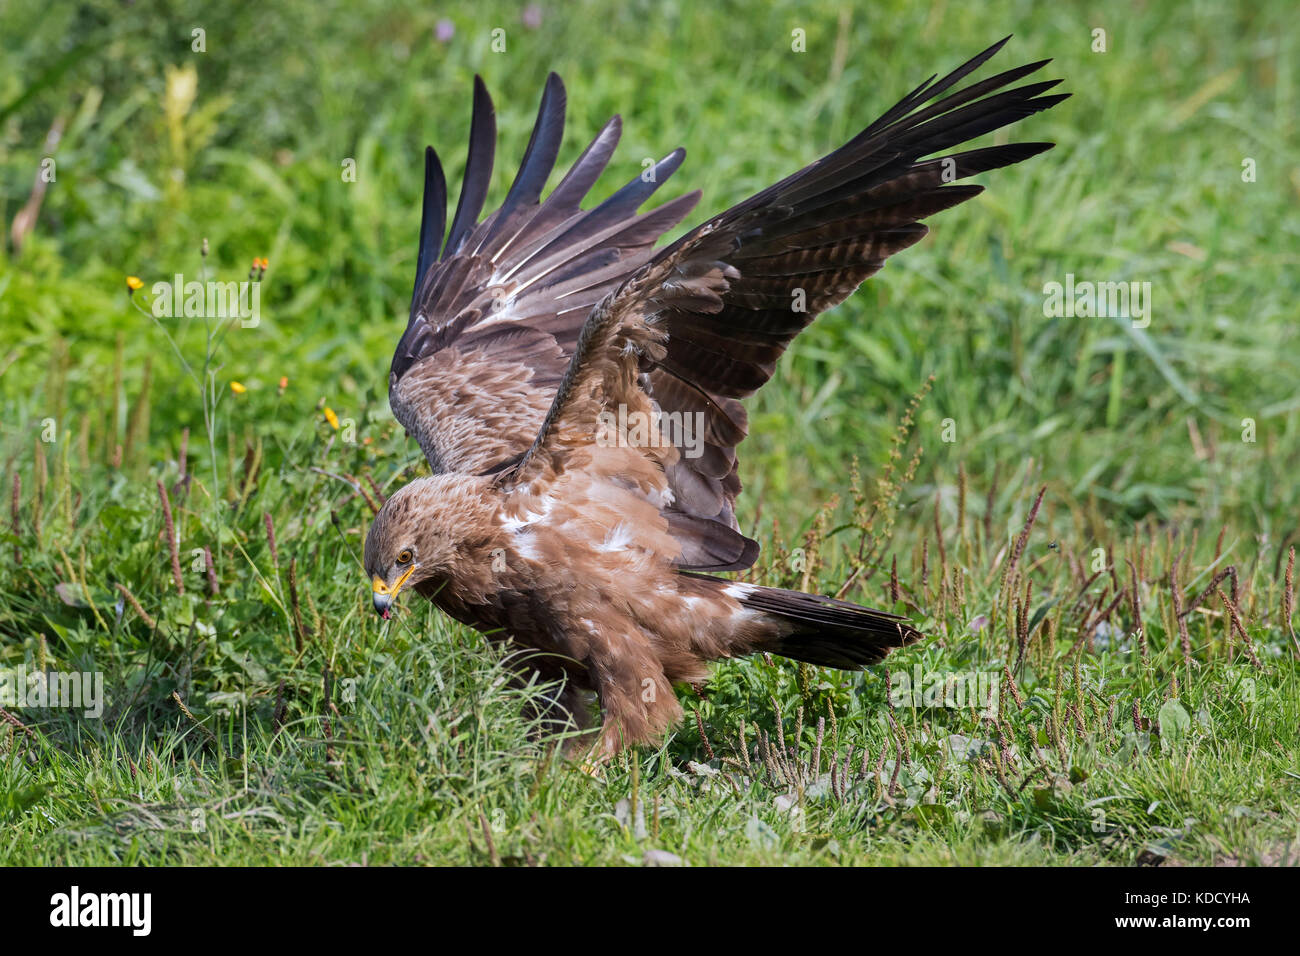 Menor (clanga águila manchado / Aquila pomarina pomarina) que aterrizaba en la pradera nativa de aves rapaces migratorias en Europa central y oriental Foto de stock